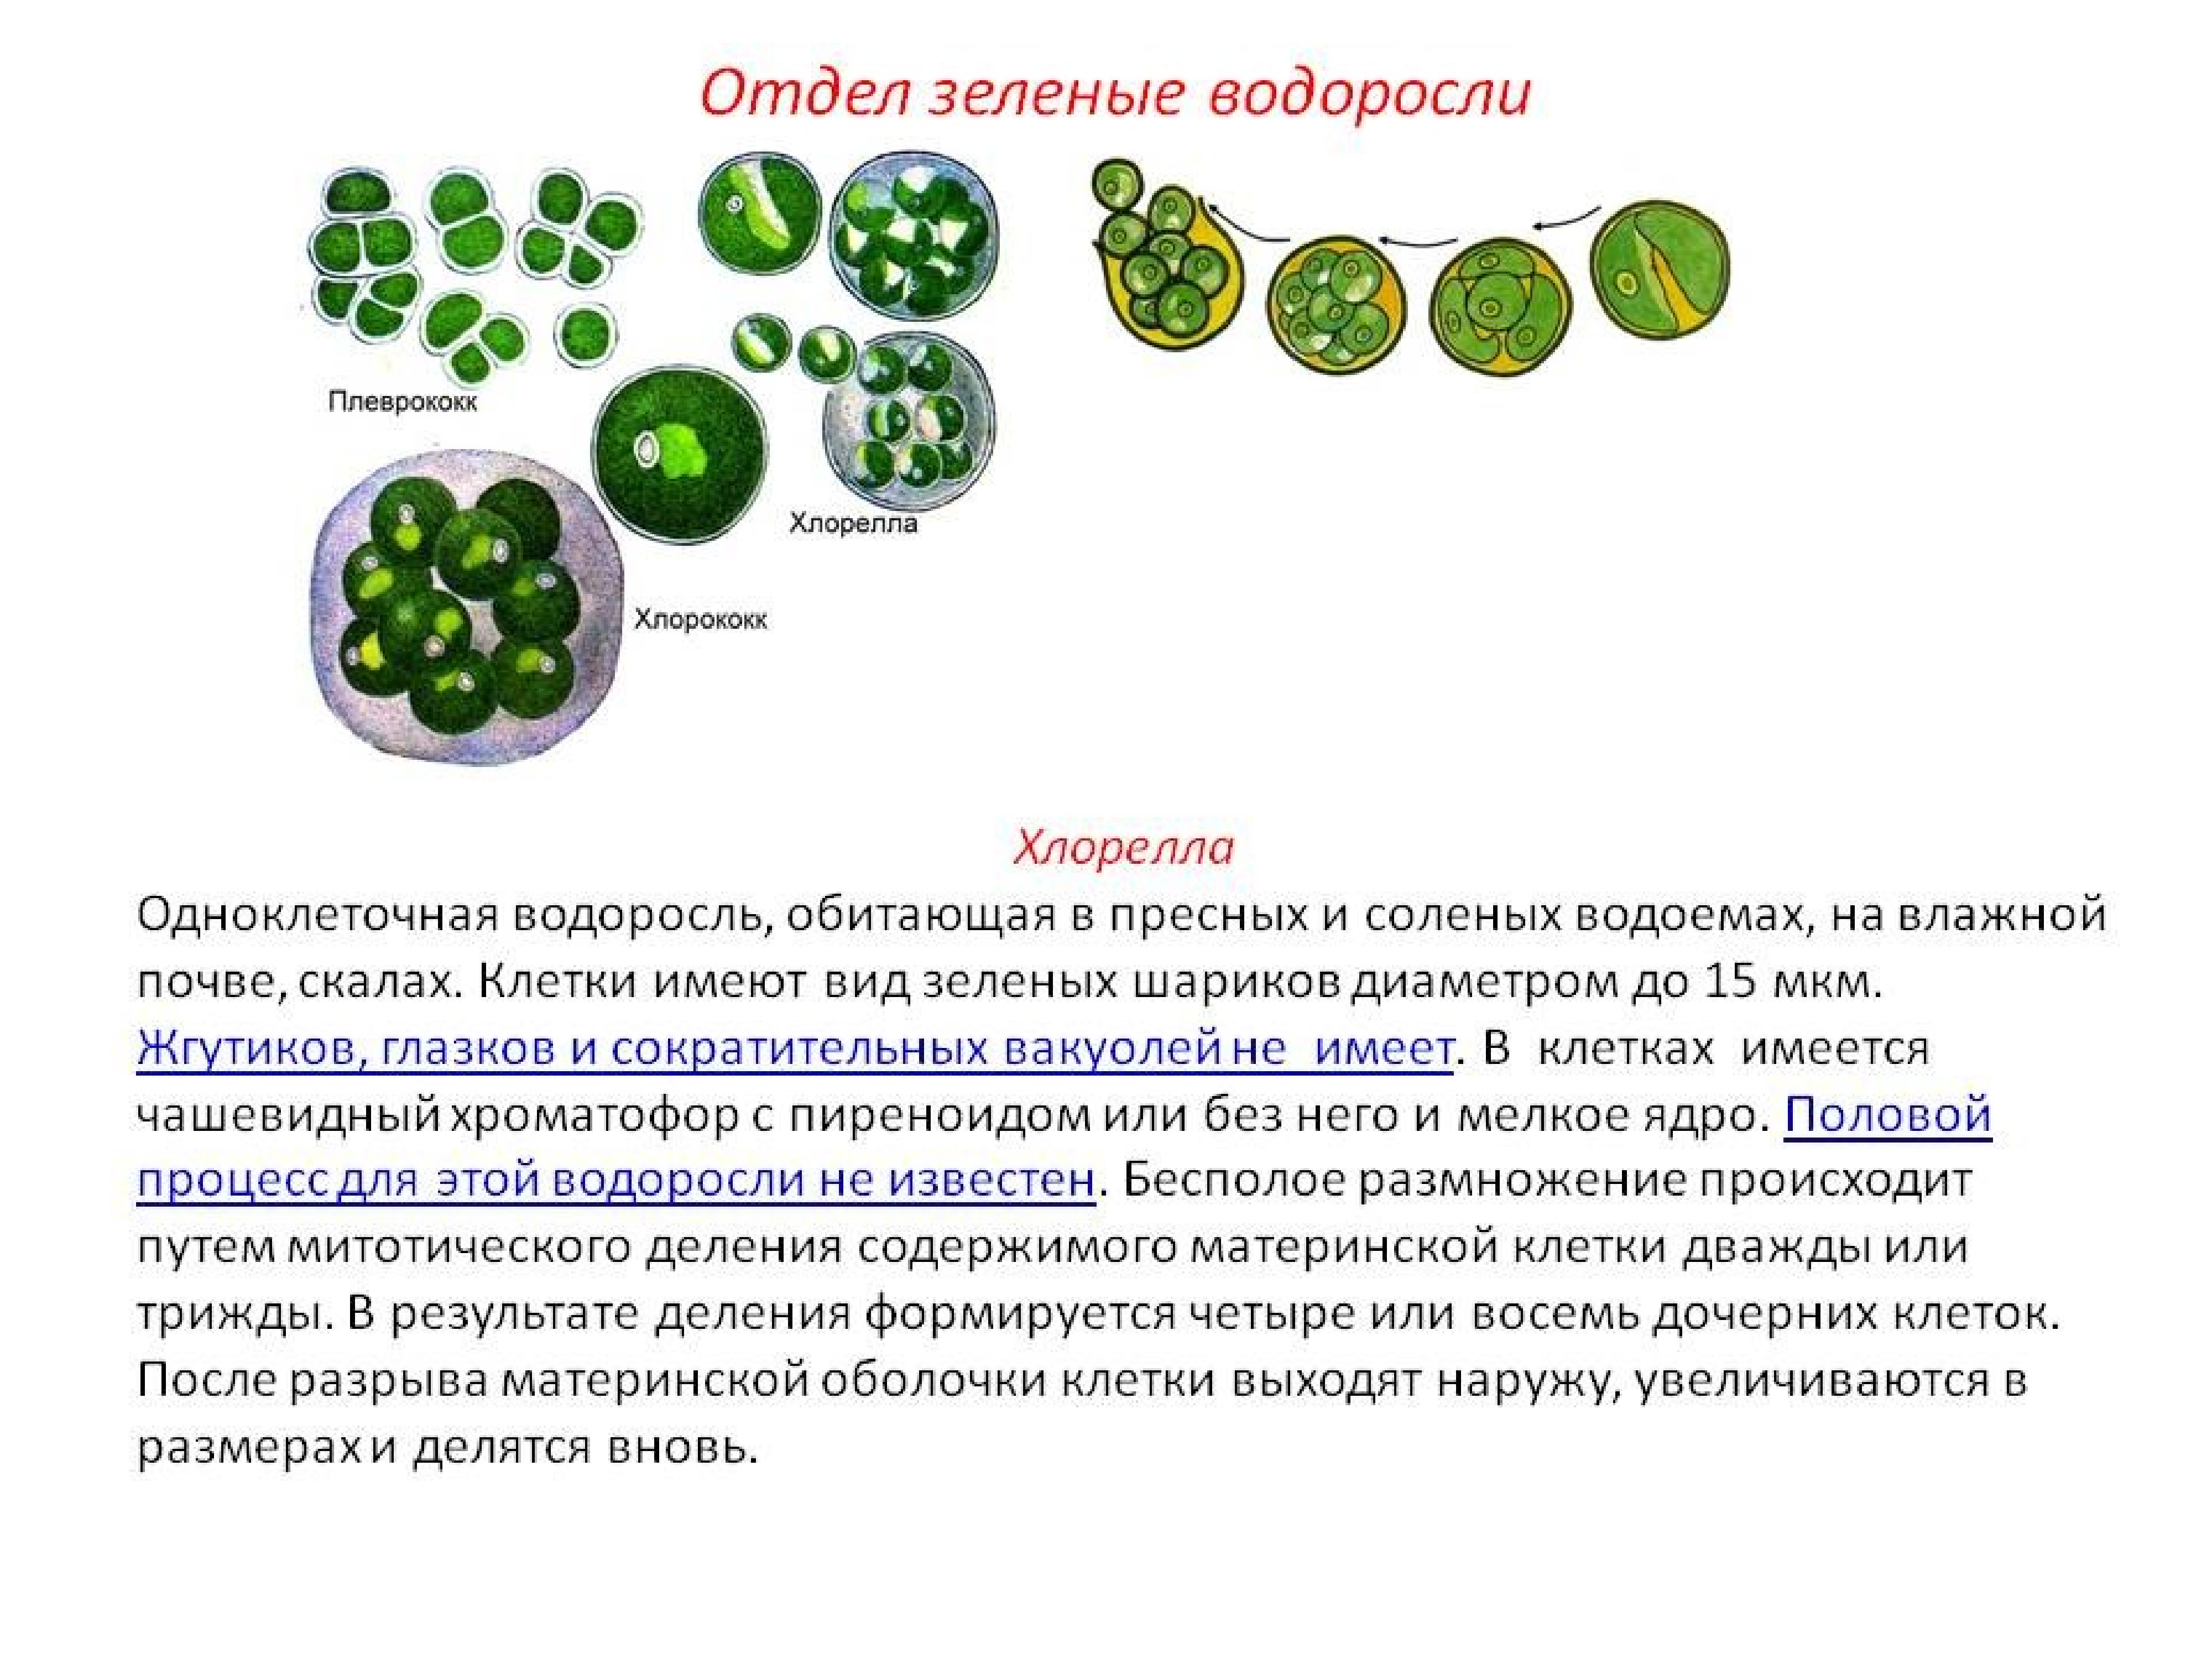 Форма одноклеточных водорослей. Зеленые водоросли хлорелла. Одноклеточные растения хлорелла. Одноклеточная водоросль хлорелла. Зеленые водоросли хлореллы строение.